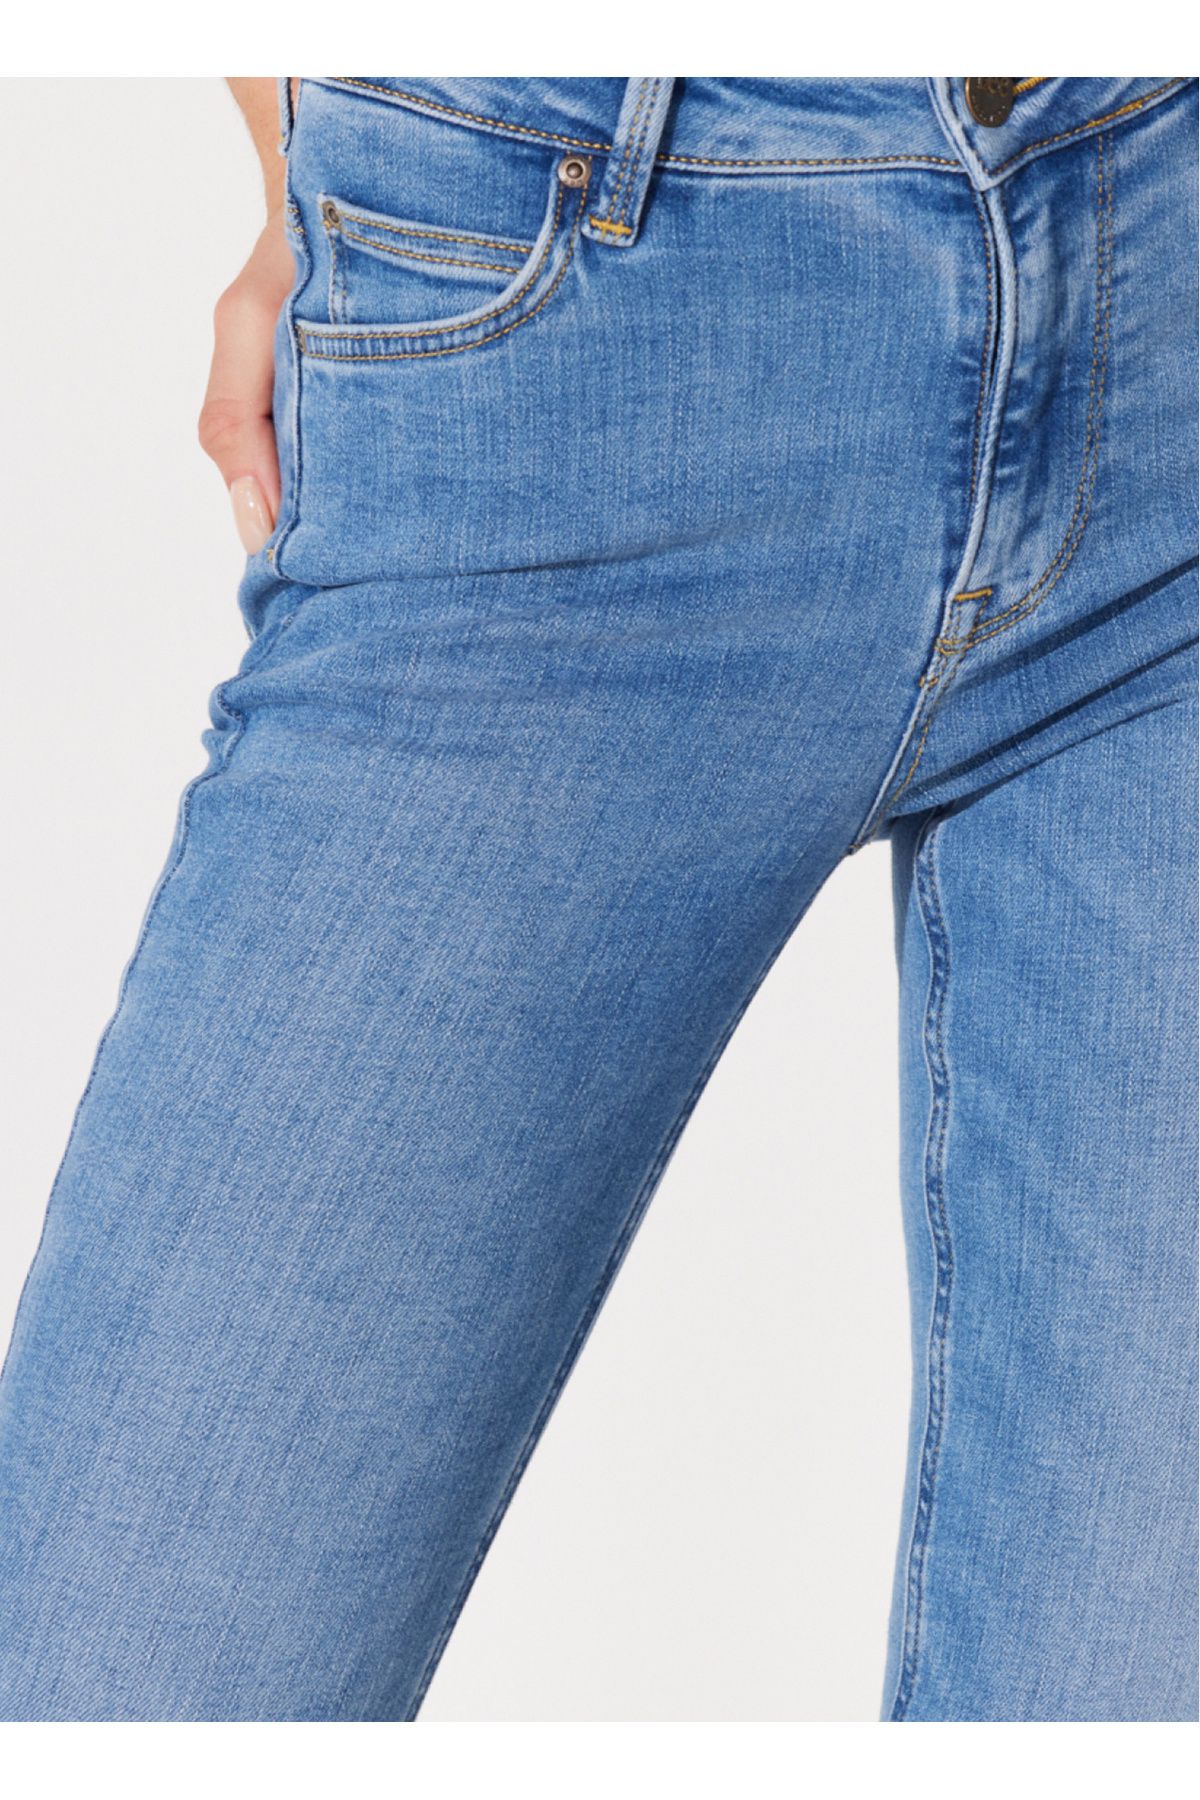 Lee شلوار جین زنانه با ساق بلند باریک و لاغر L32SOVD44-آبی متوسط